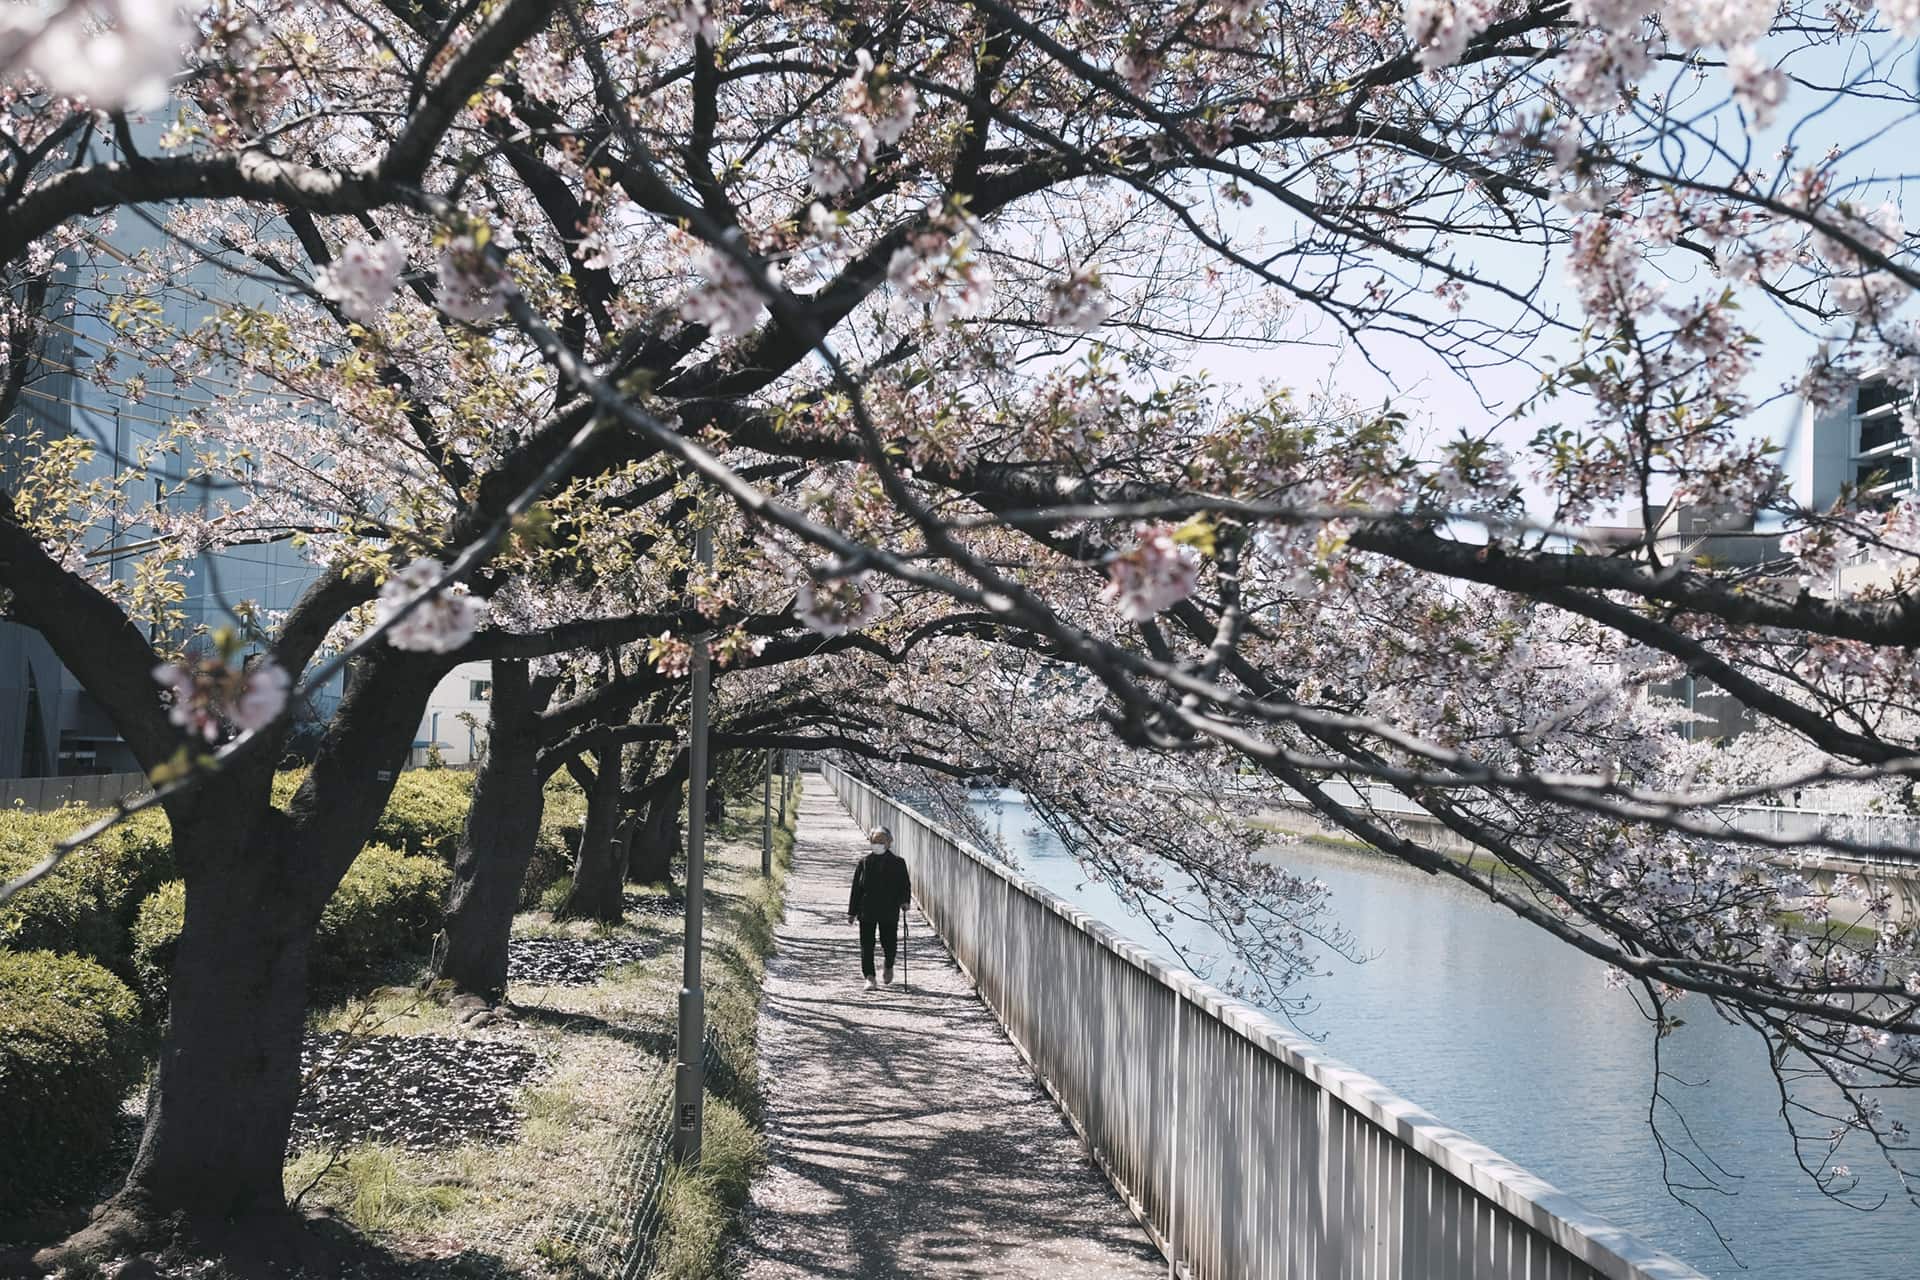 Elderly person walking along tree lined river in Japan